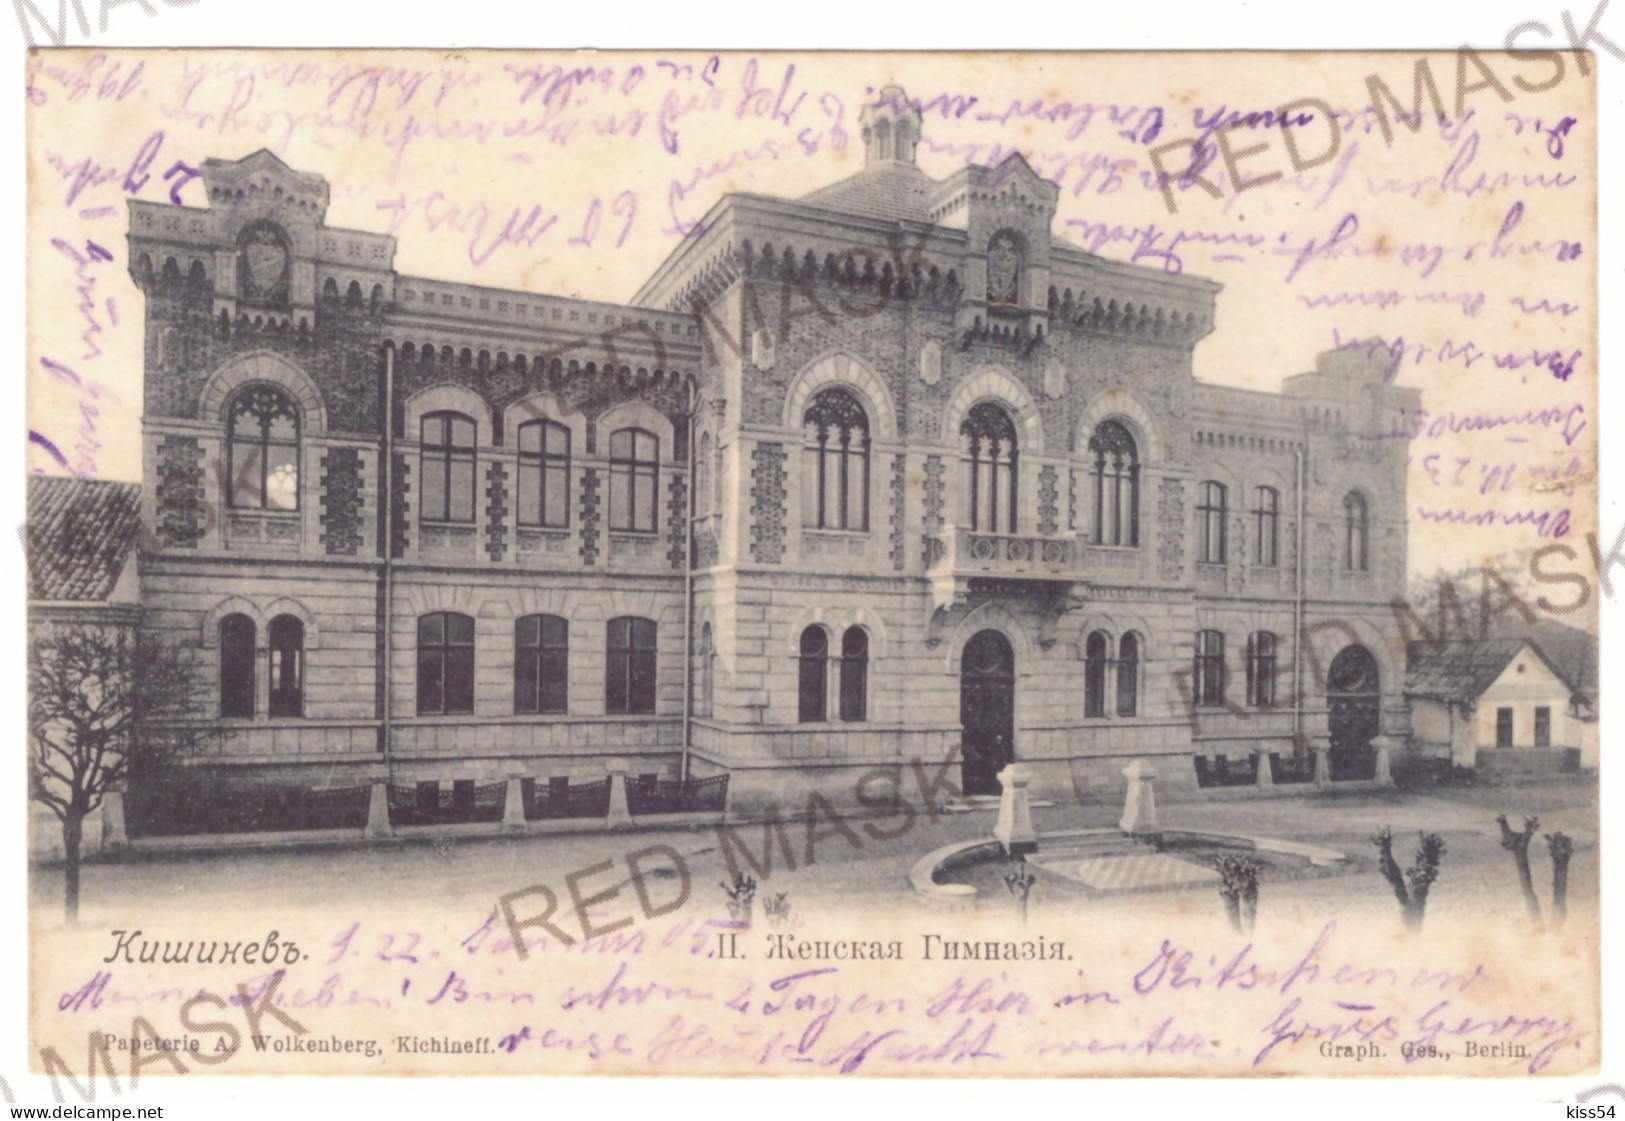 MOL 1 - 20109 CHISINAU, Moldova - Old Postcard - Used - 1905 - Moldavie